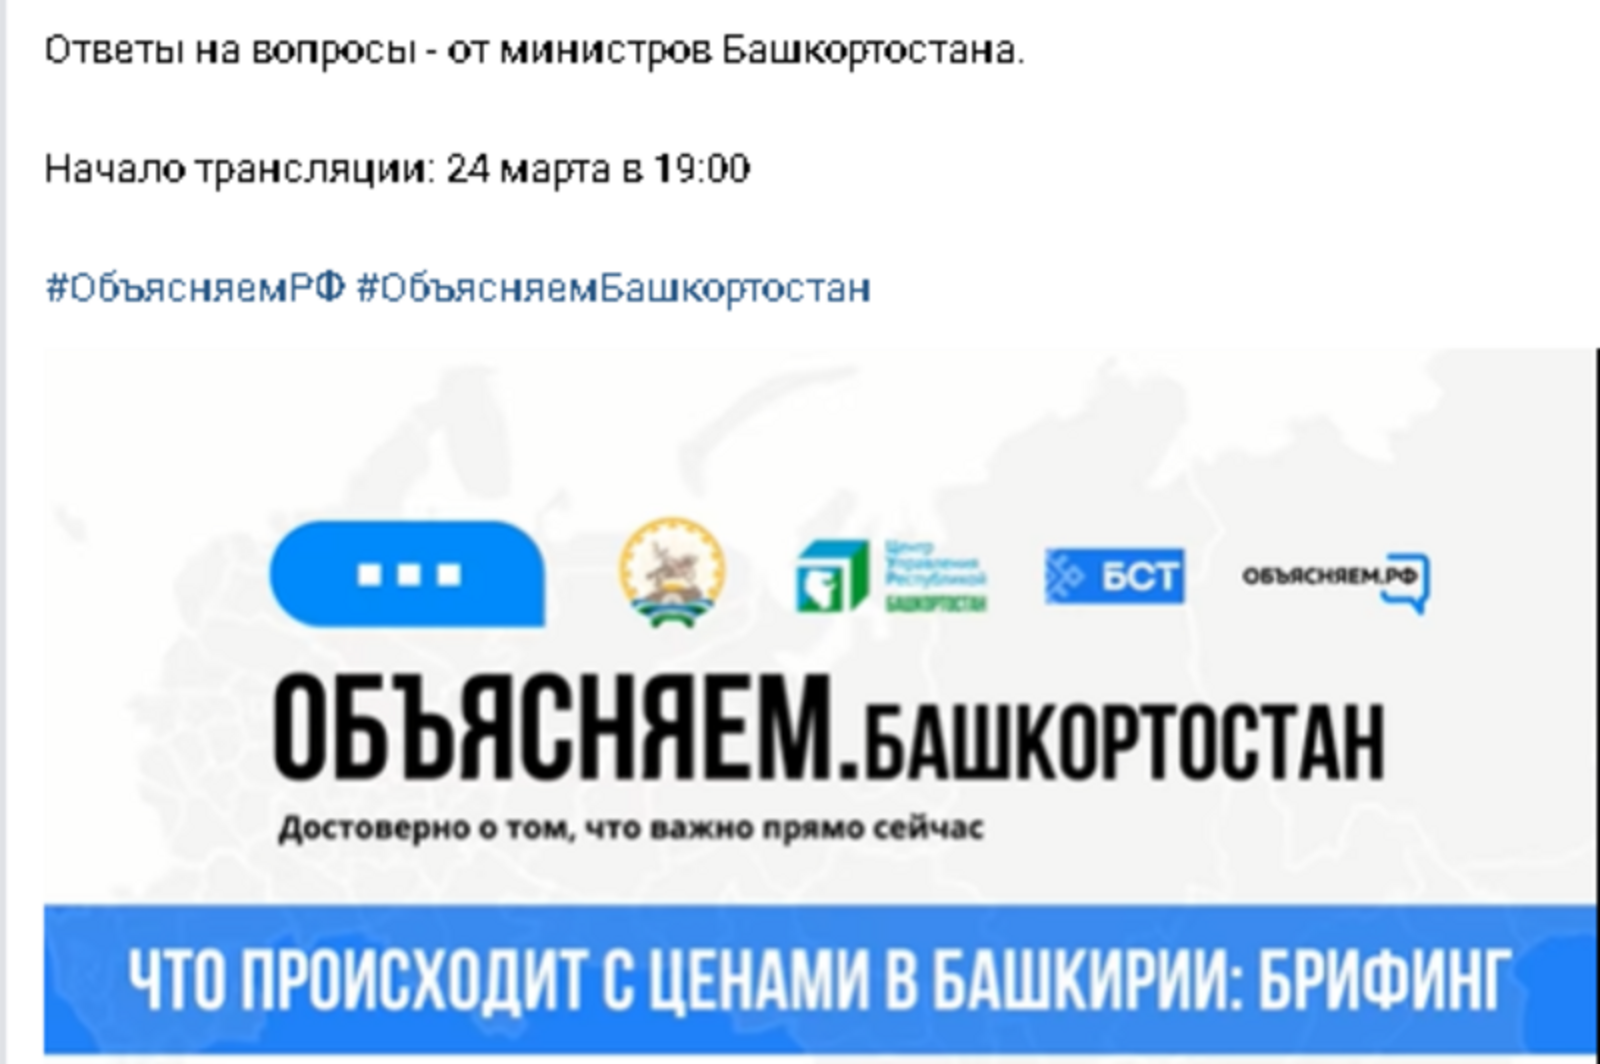 Все актуальные вакансии и варианты трудоустройства размещены на Едином цифровом портале «Работа России»